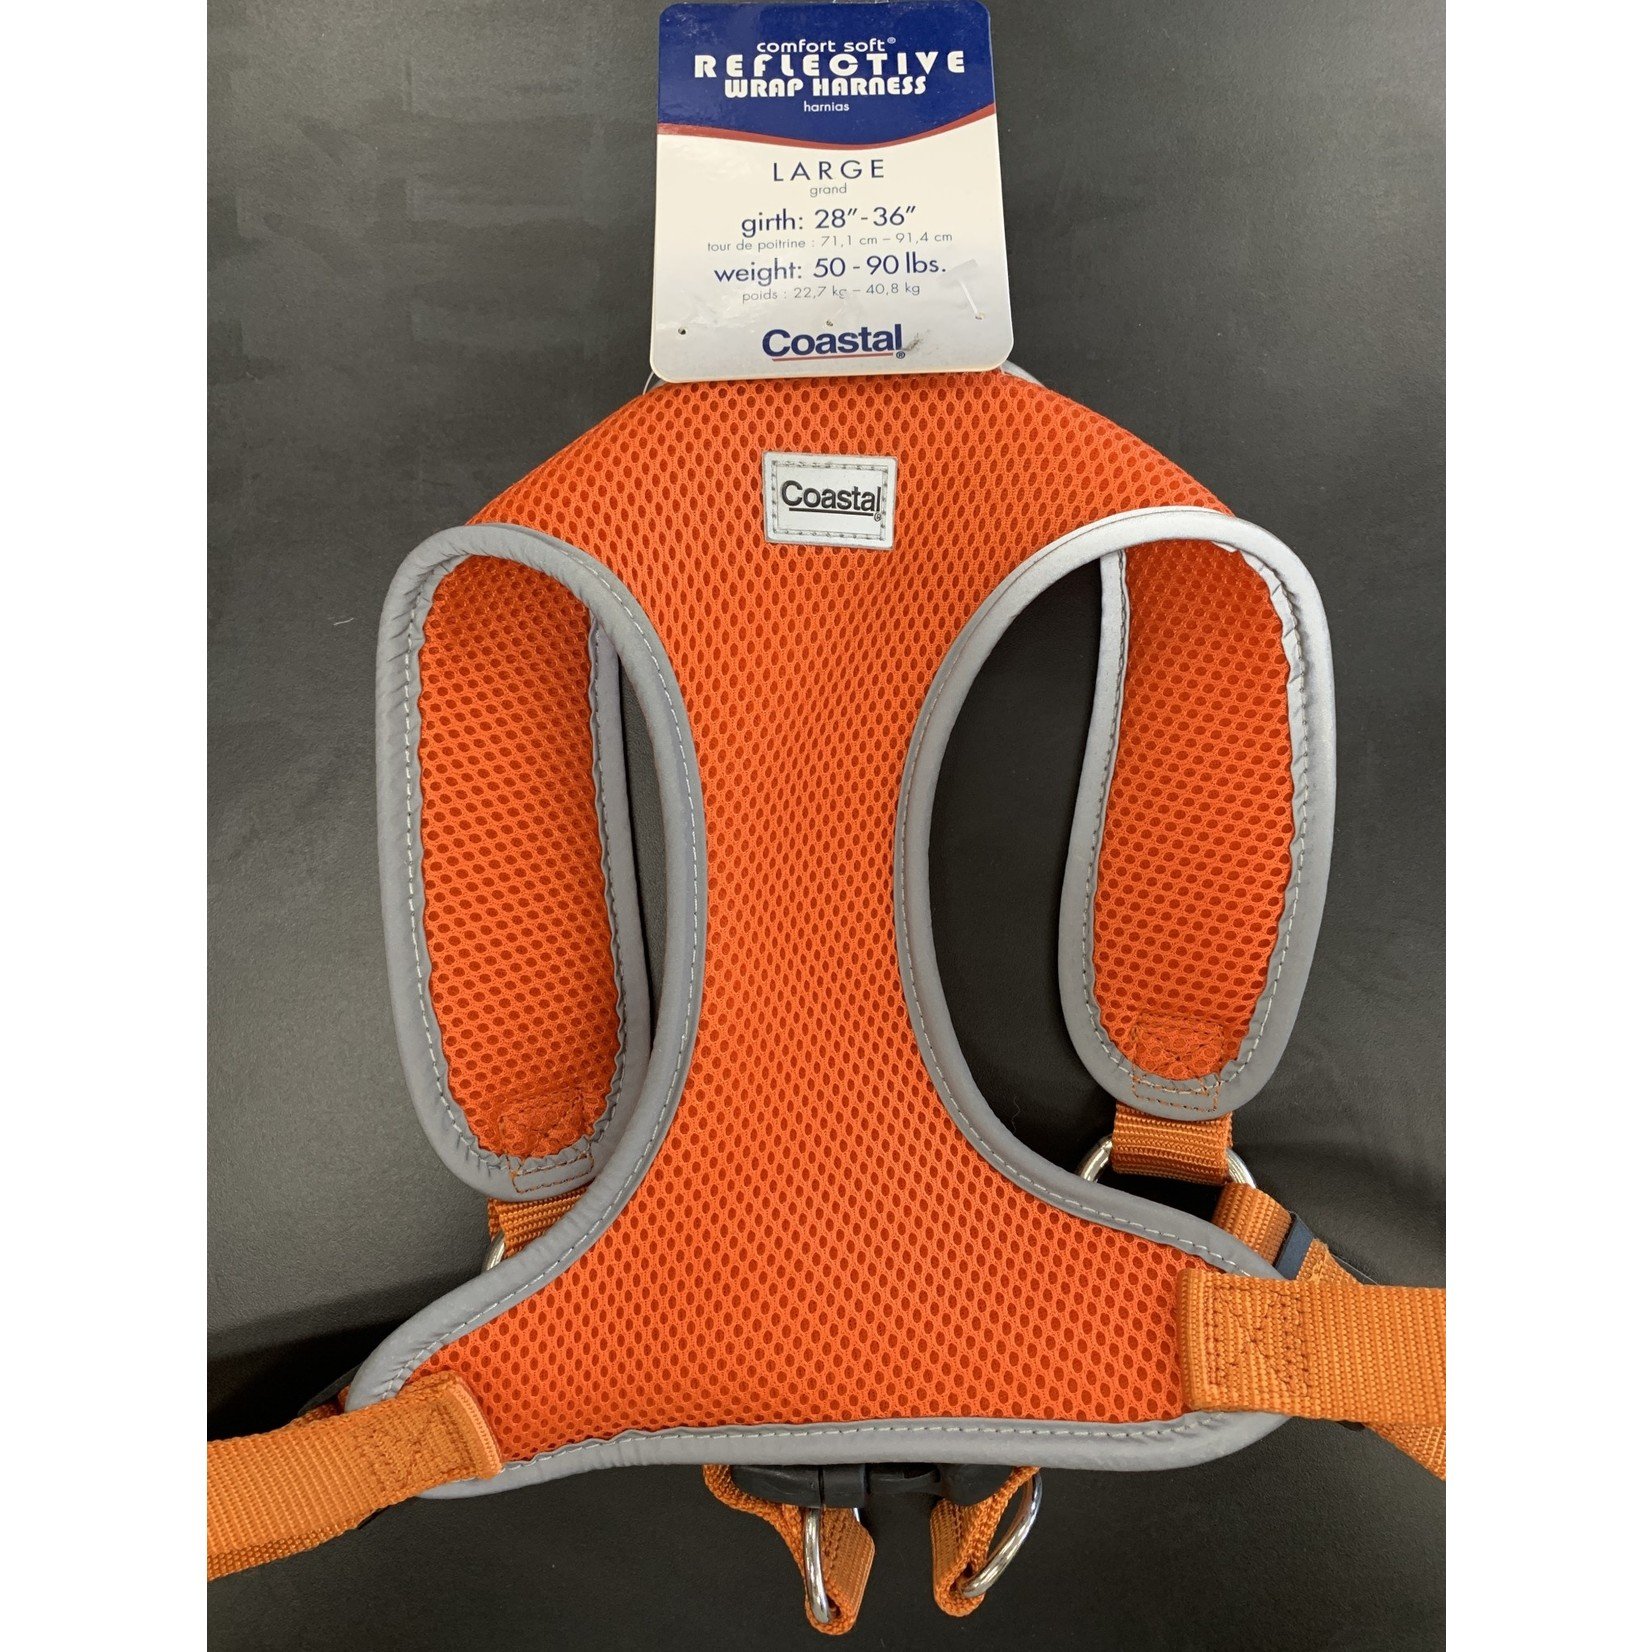 Coastal COASTAL. Reflective Wrap Harness. Orange. Large/Girth 28-36”